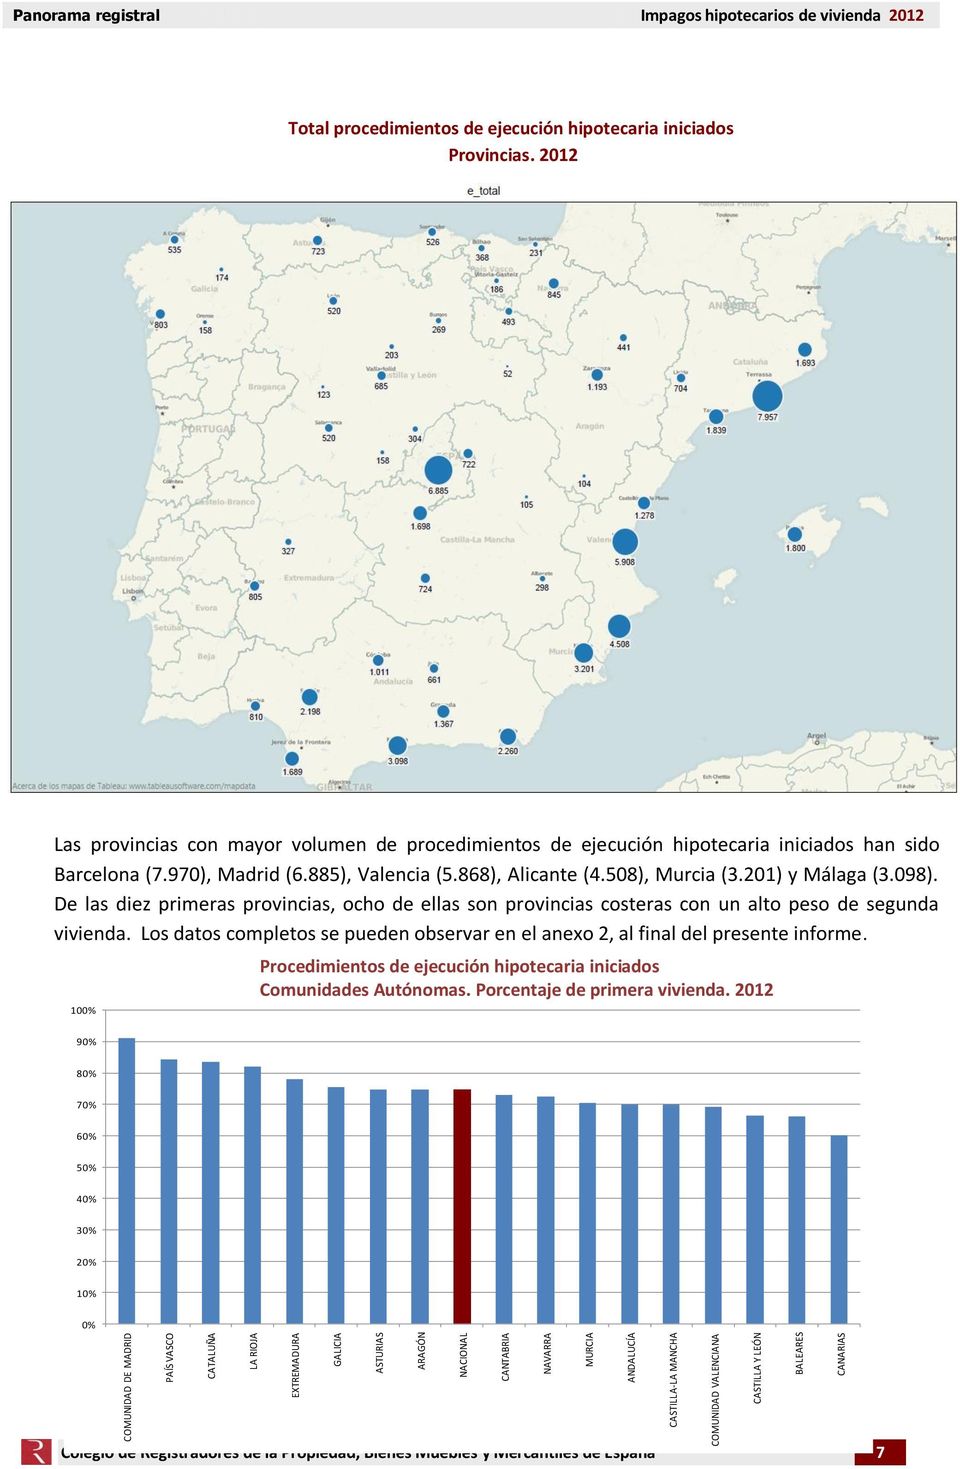 2012 Las provincias con mayor volumen de procedimientos de ejecución hipotecaria iniciados han sido Barcelona (7.970), Madrid (6.885), Valencia (5.868), Alicante (4.508), Murcia (3.201) y Málaga (3.